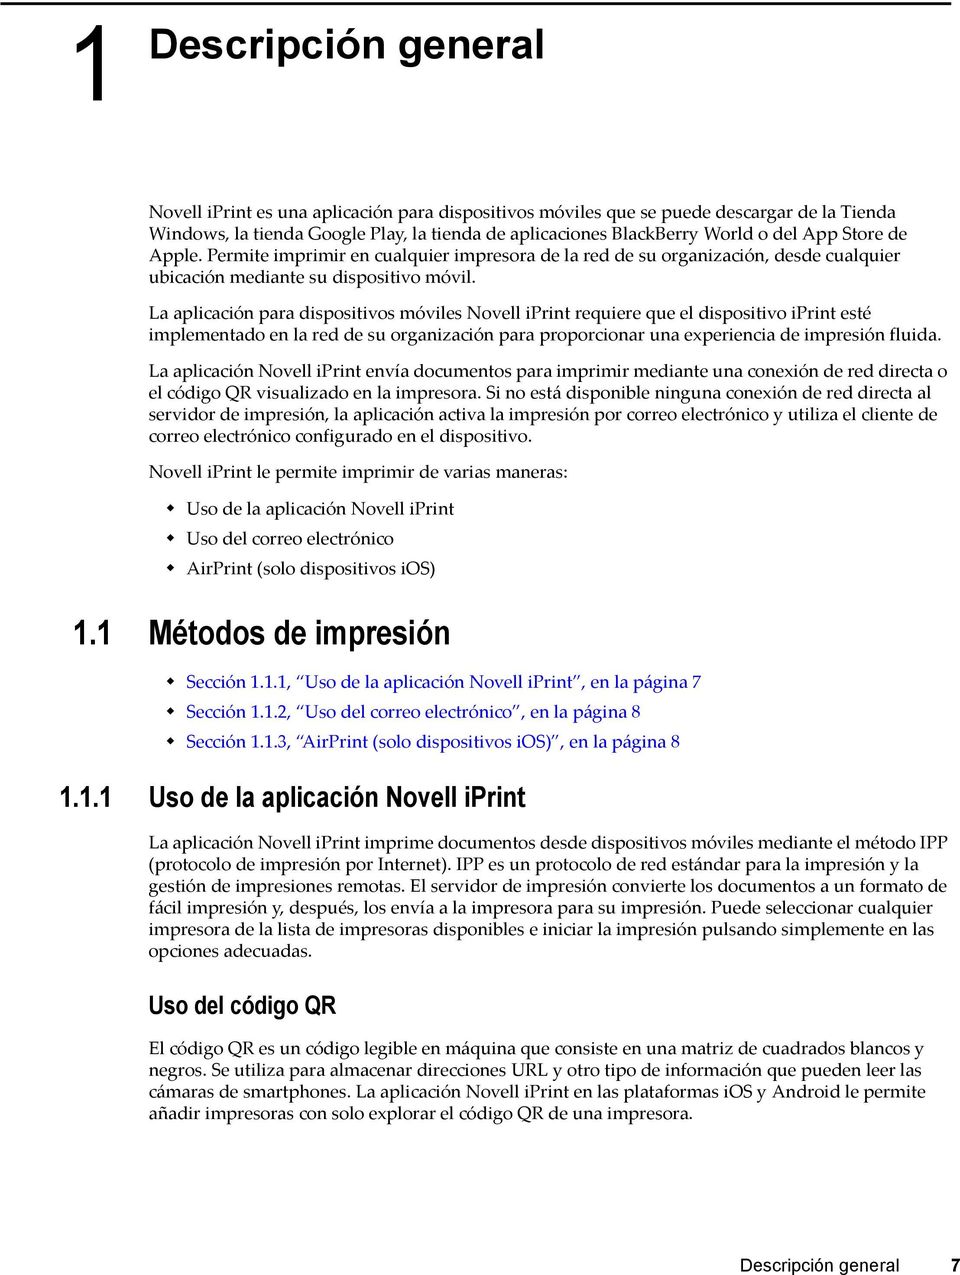 La aplicación para dispositivos móviles Novell iprint requiere que el dispositivo iprint esté implementado en la red de su organización para proporcionar una experiencia de impresión fluida.